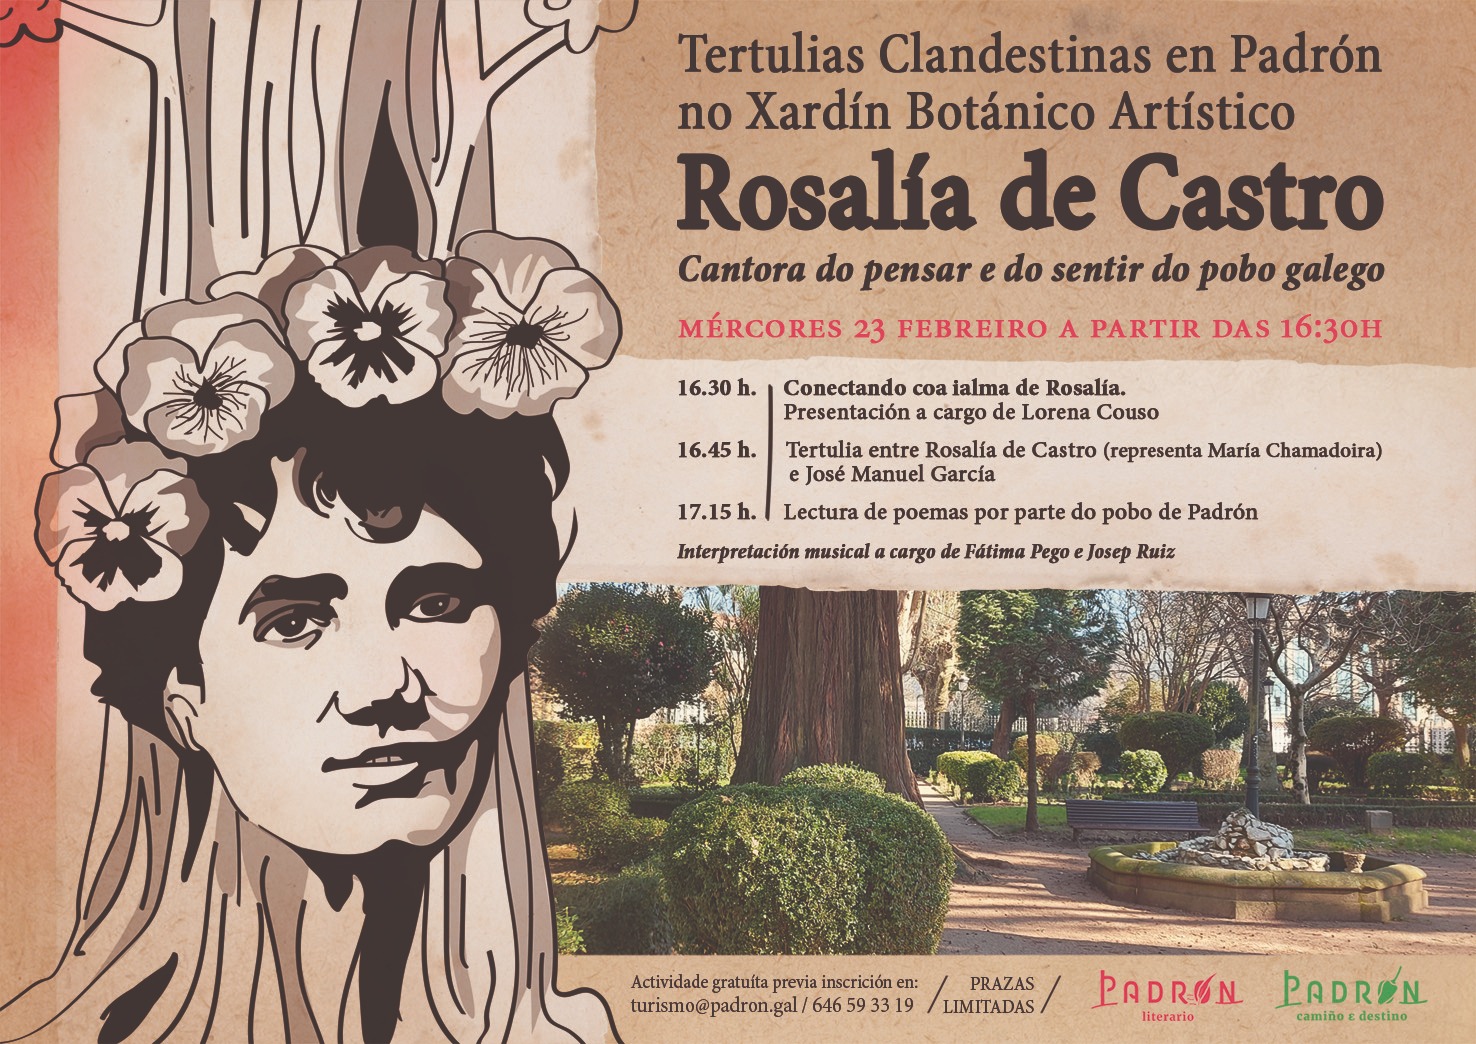 Tertulias Clandestinas con Rosalía de Castro